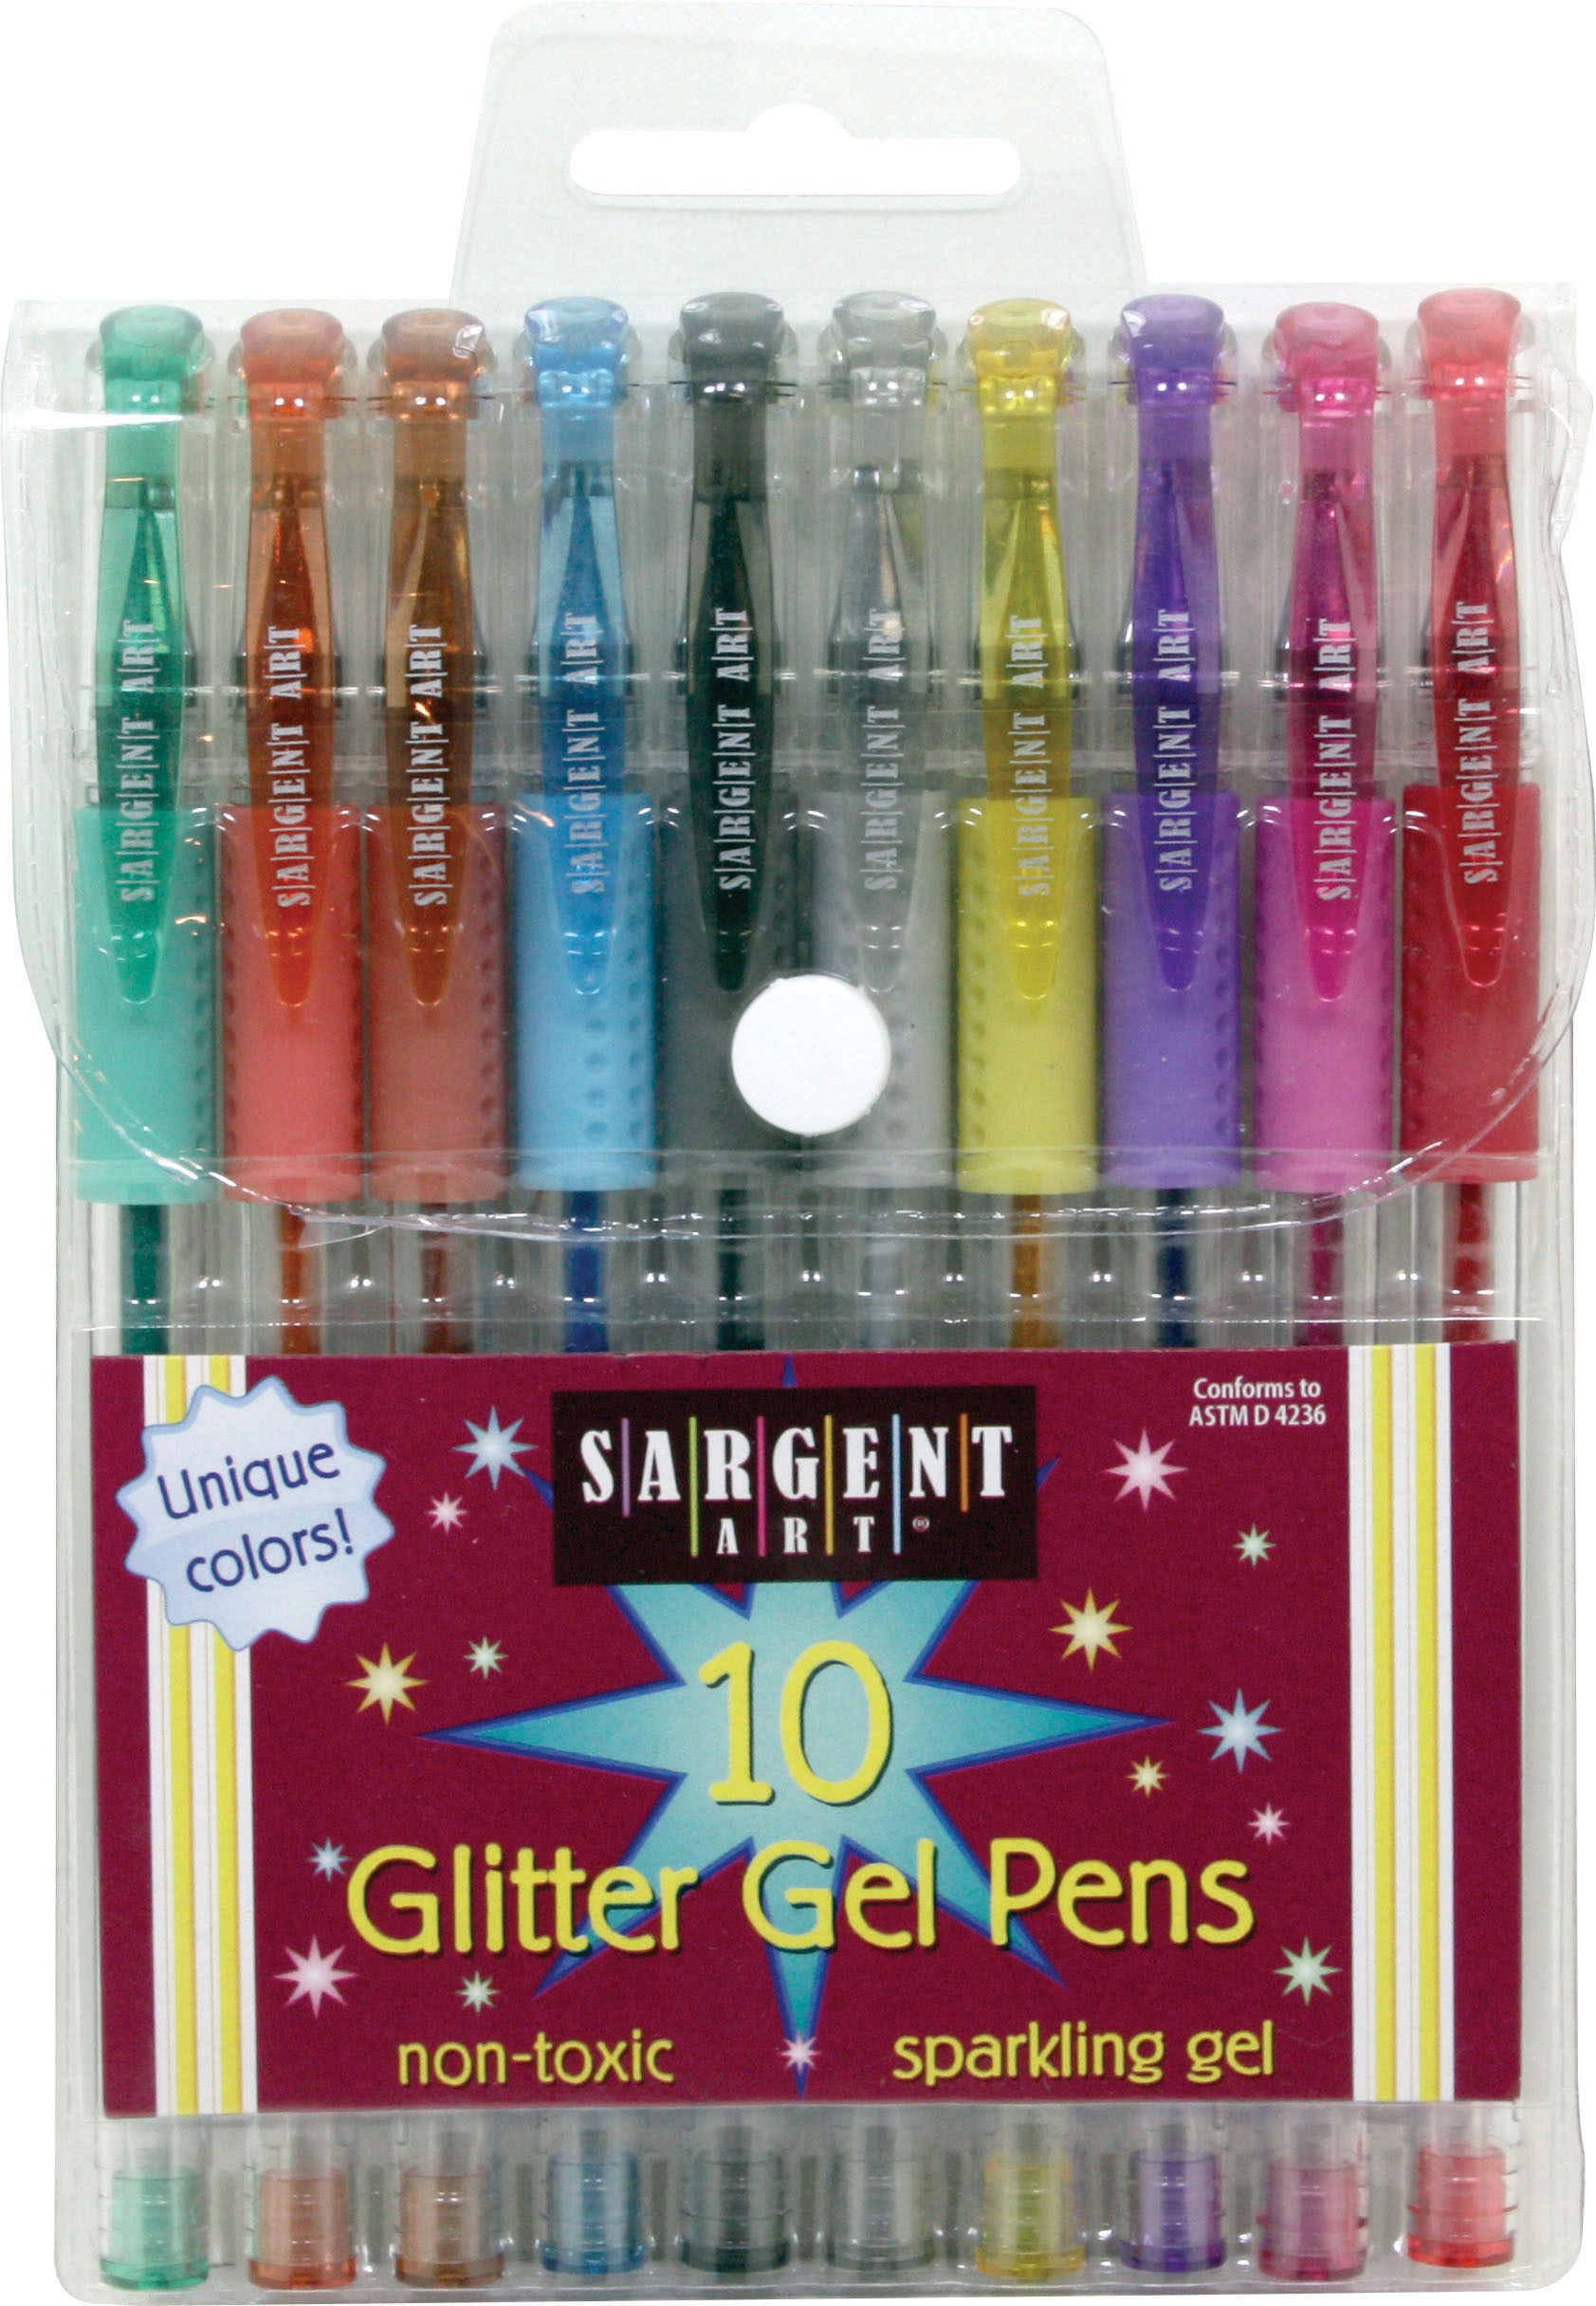 Sargent Art Glitter Gel Pens, 10-Count (22-1501) - image 1 of 2